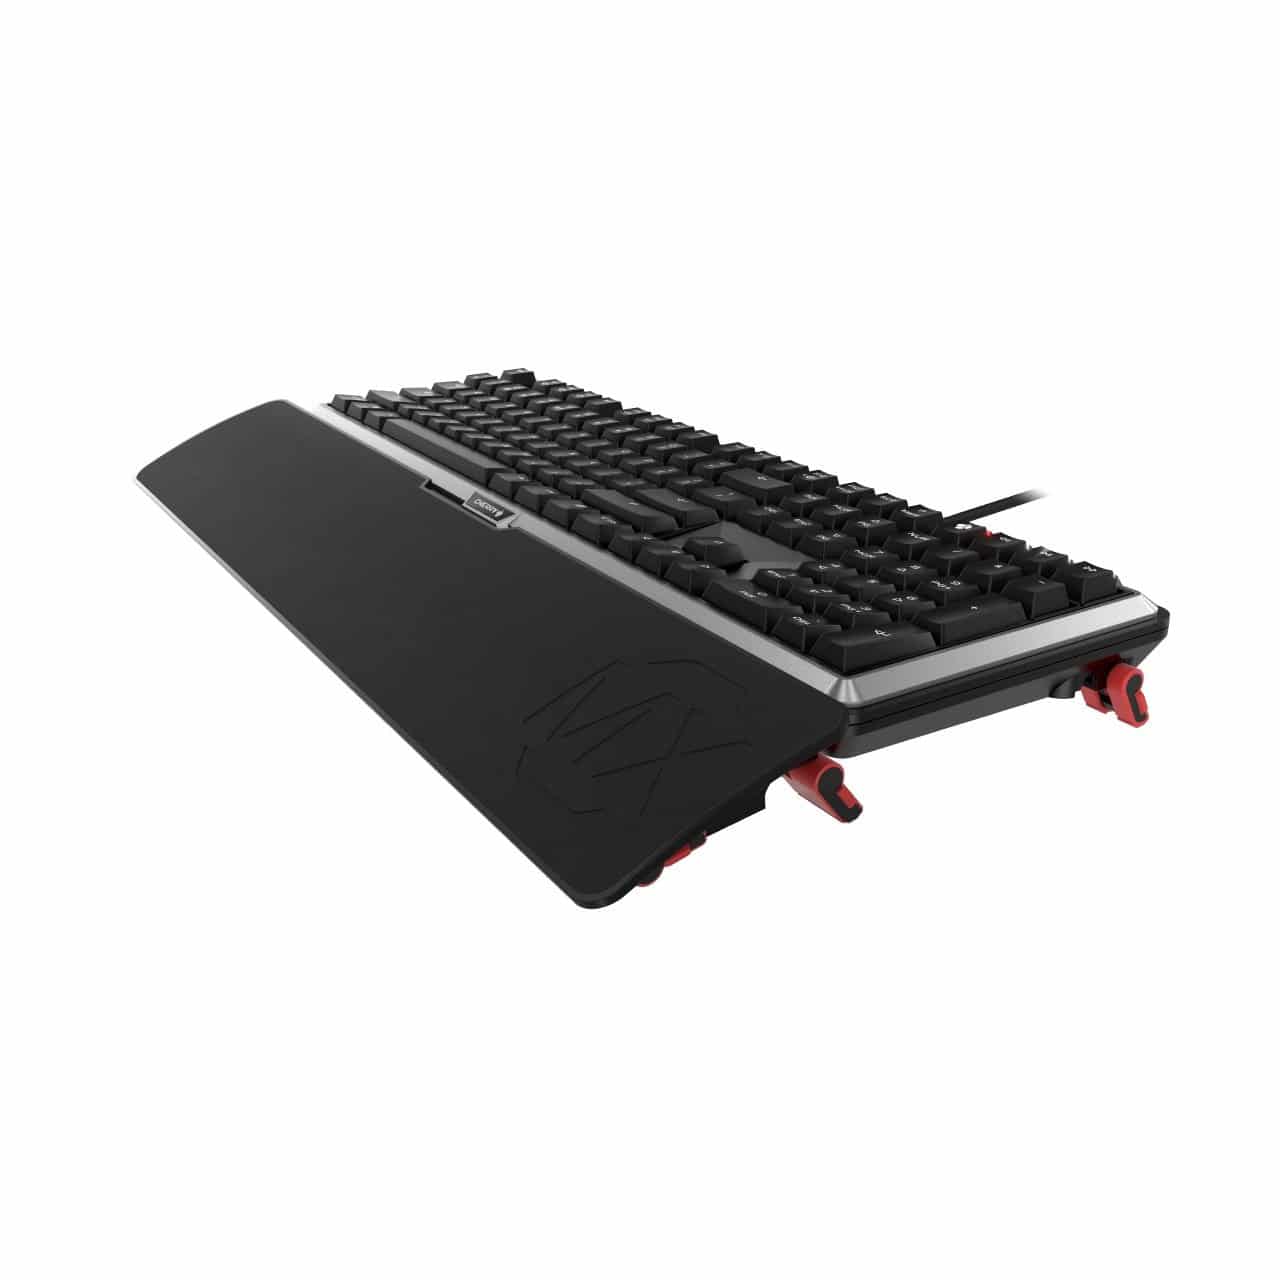 Image 5 : Cherry MX Board 5.0 : clavier mécanique silencieux et ergonomique pour gamers